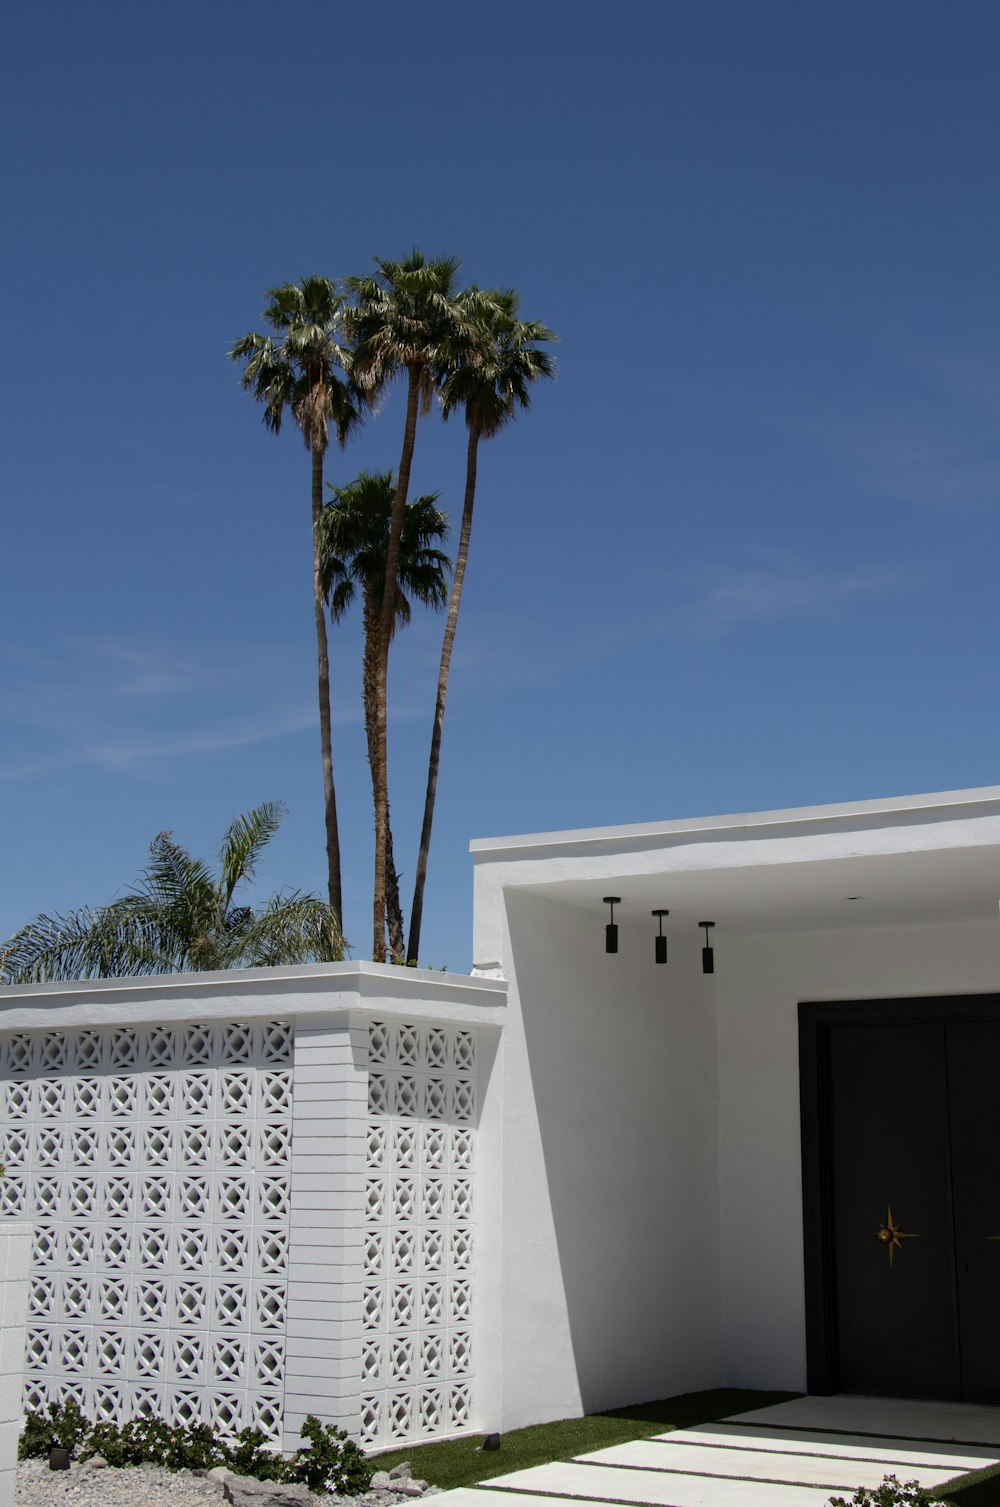 Mexikanische Palme in der Nähe eines weiß gestrichenen Hauses